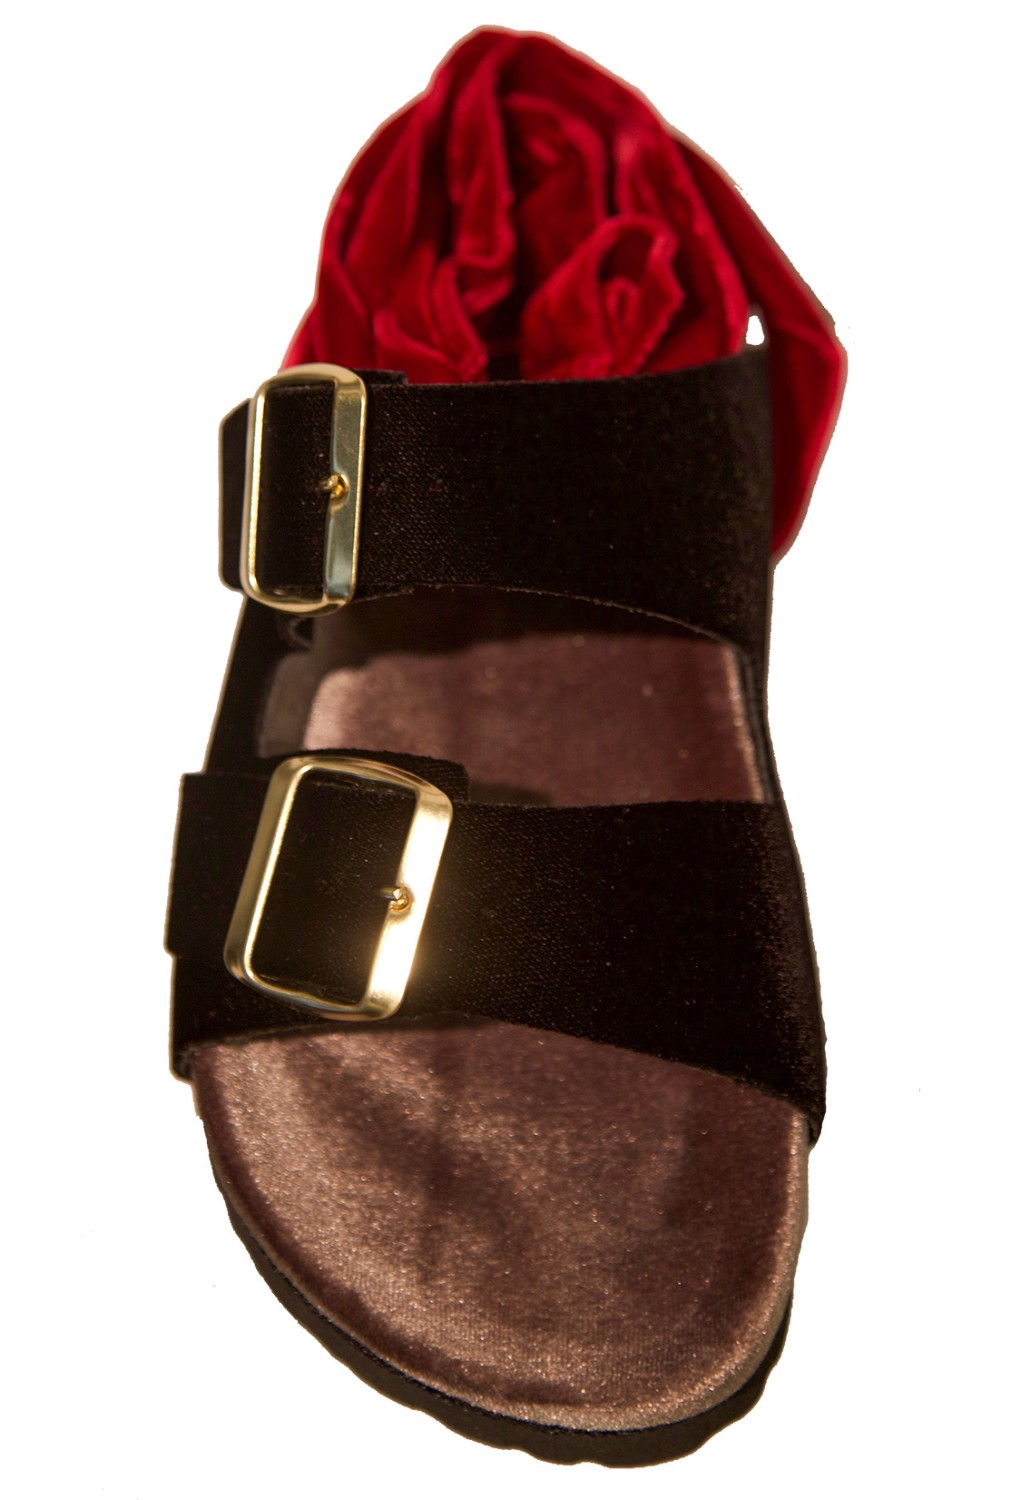 shop Gia Couture Sales Scarpe: Sandalo Gia Couture, in velluto, dettaglio laccio in rosso, fasce in nero e suola color sabbia.

Composizione: 100% velluto.
Suola: 100% gomma. number 1258